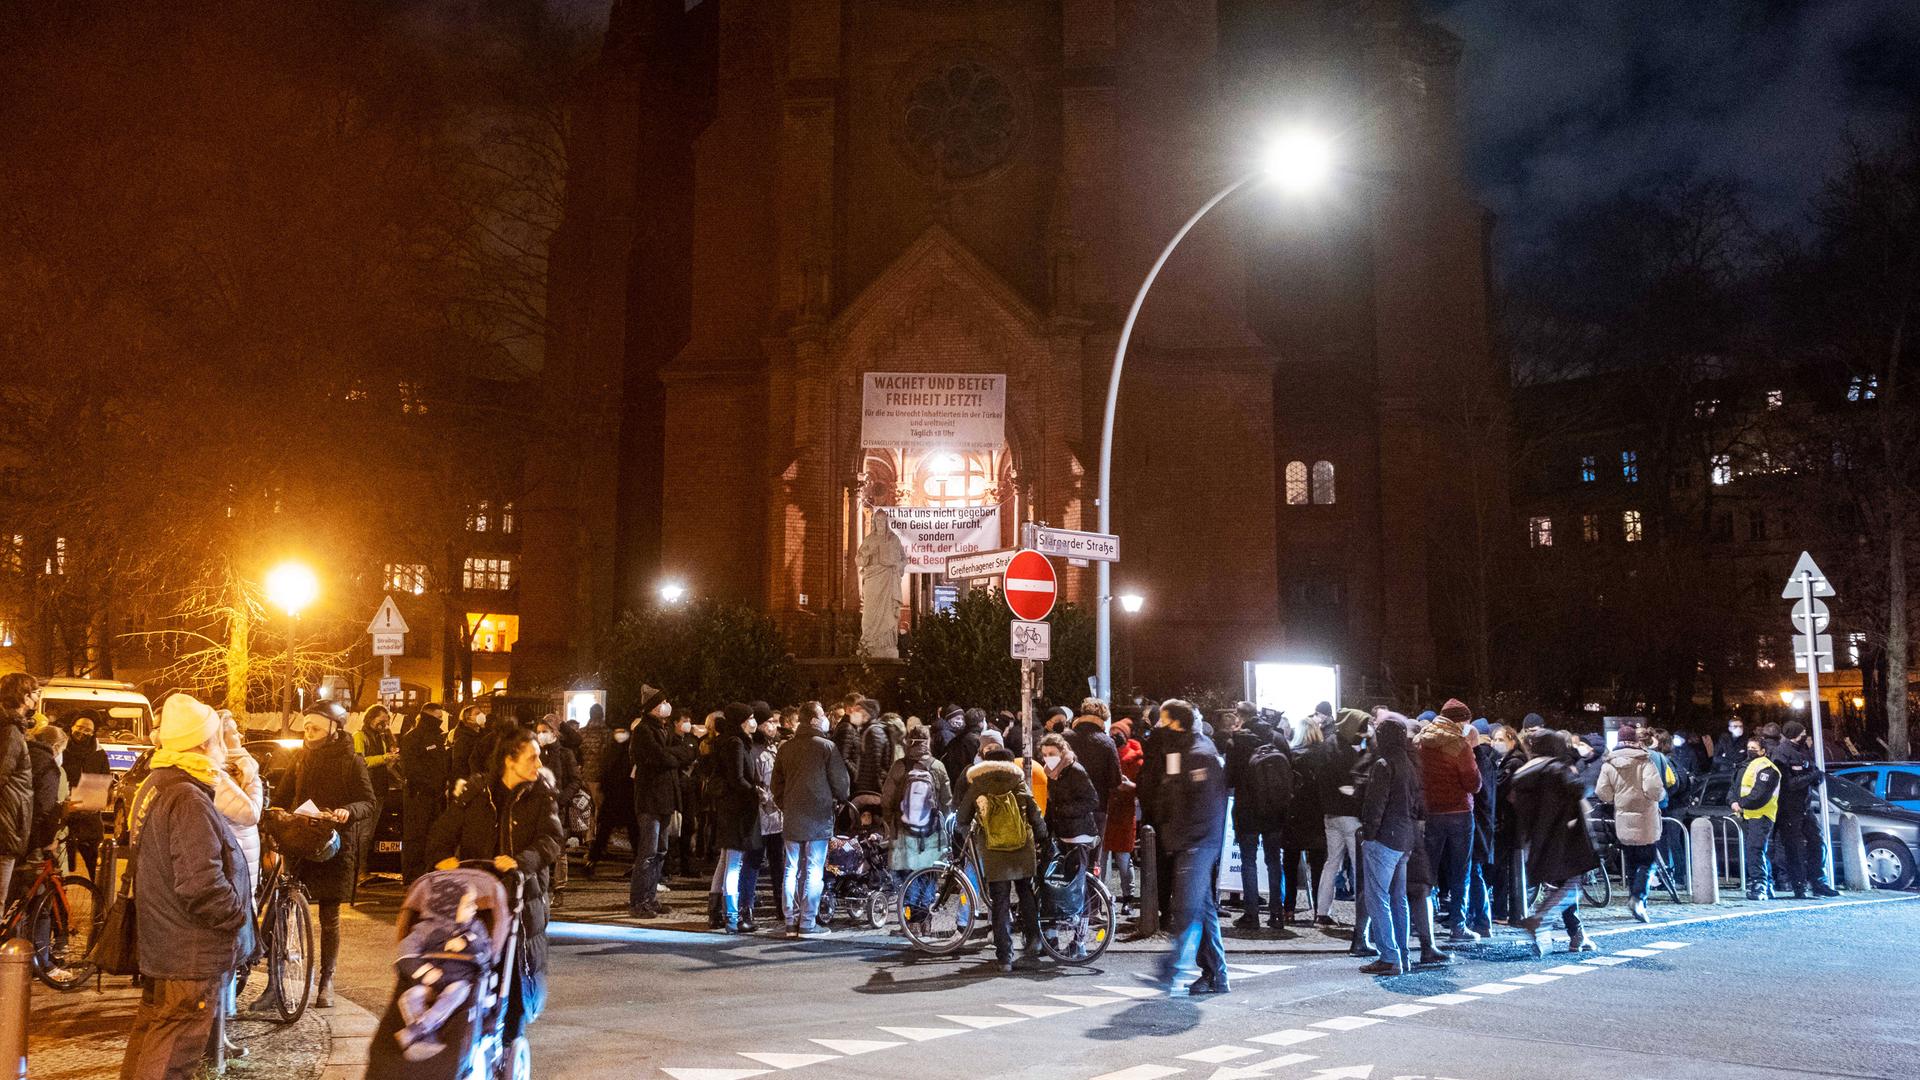 Viele Menschen mit Mundschutz stehen am Abend auf der Straße, vor dem Eingang einer Backsteinkirche.